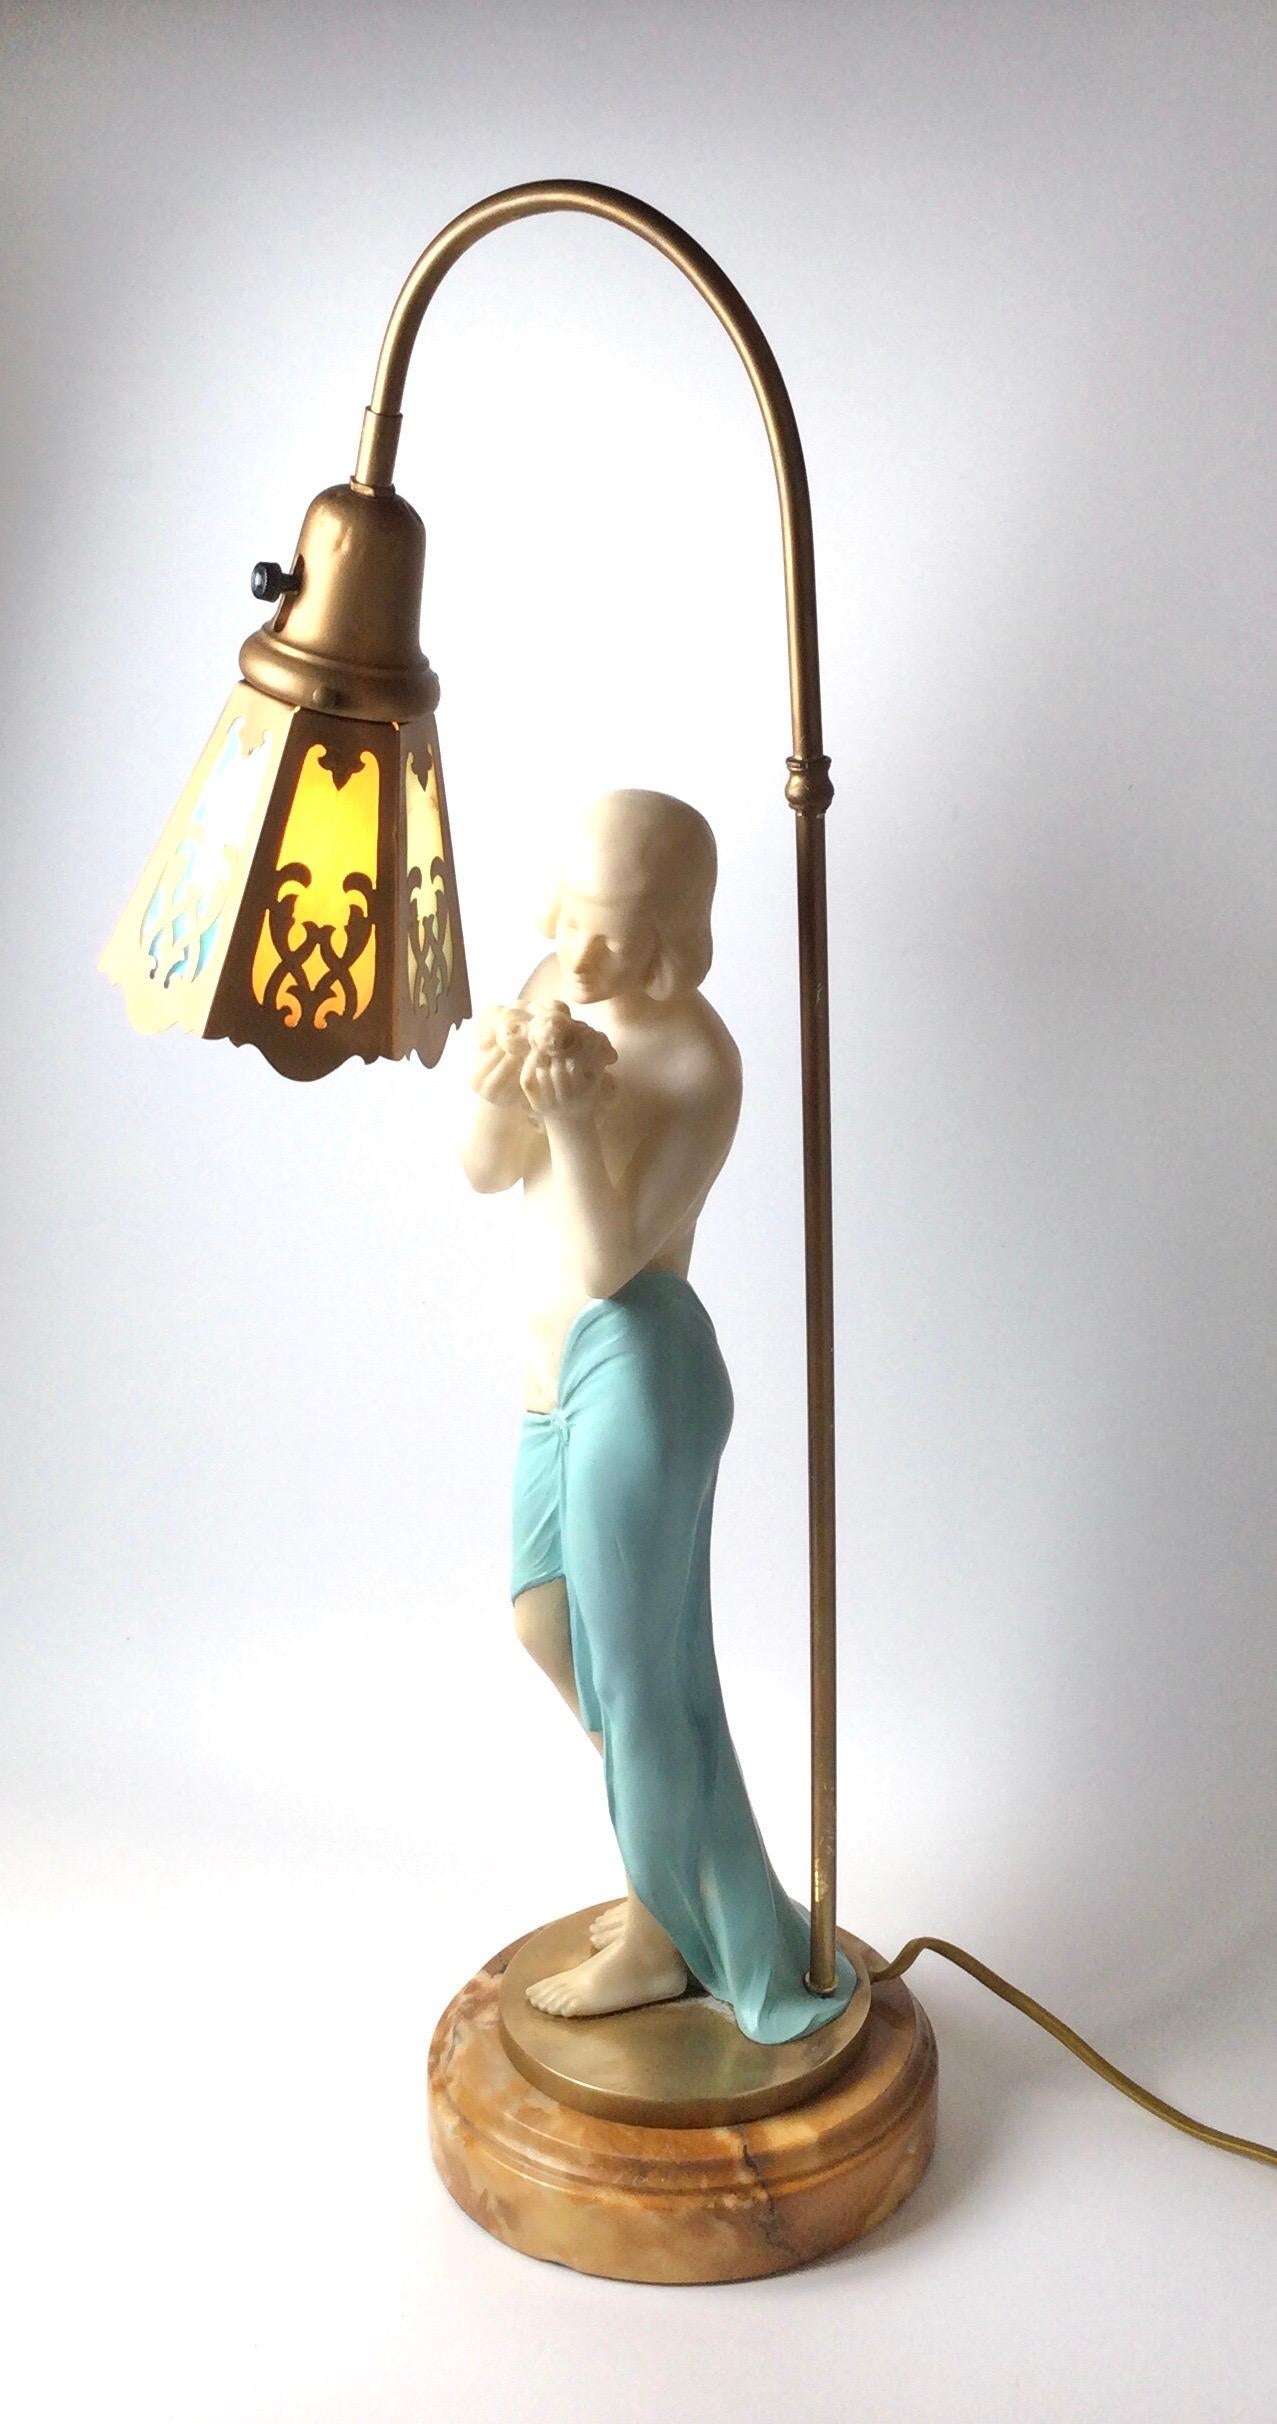 Jolie lampe figurative représentant une jolie femme portant un drapé bleu couvrant sa hanche, semi-nue sentant un bouquet de roses. Abat-jour de forme hexagonale avec 3 panneaux en verre de scorie de couleur bleue et crème. Elle repose sur un disque